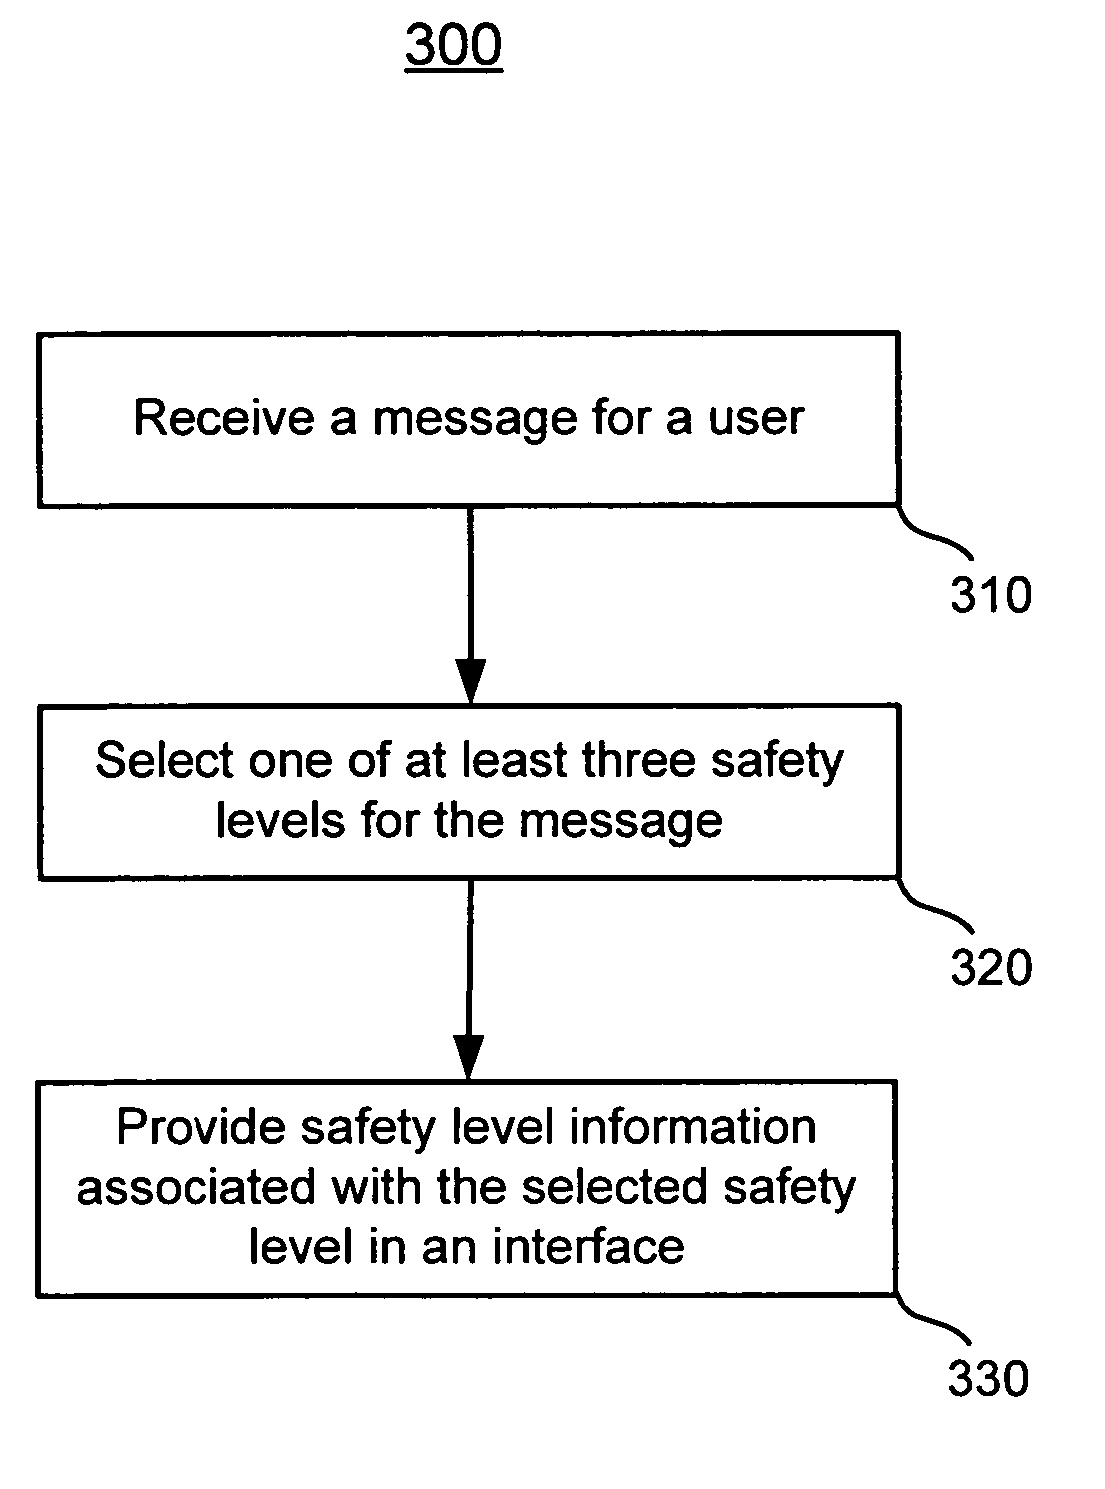 Categorizing mails by safety level